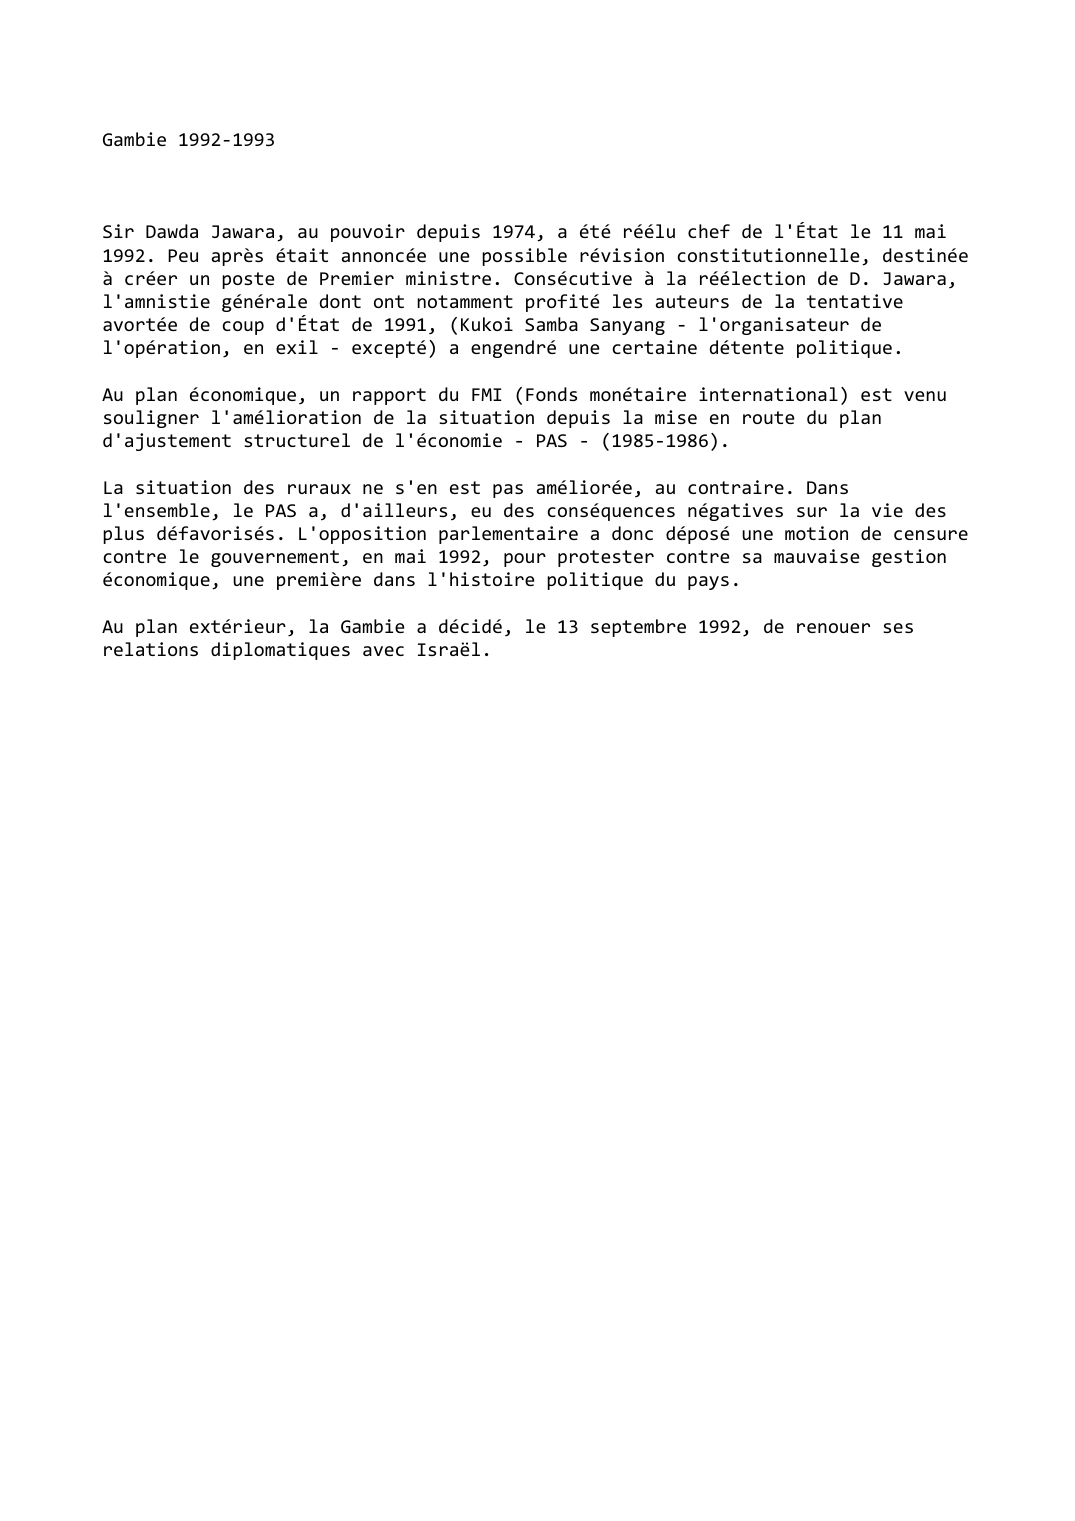 Prévisualisation du document Gambie (1992-1993)